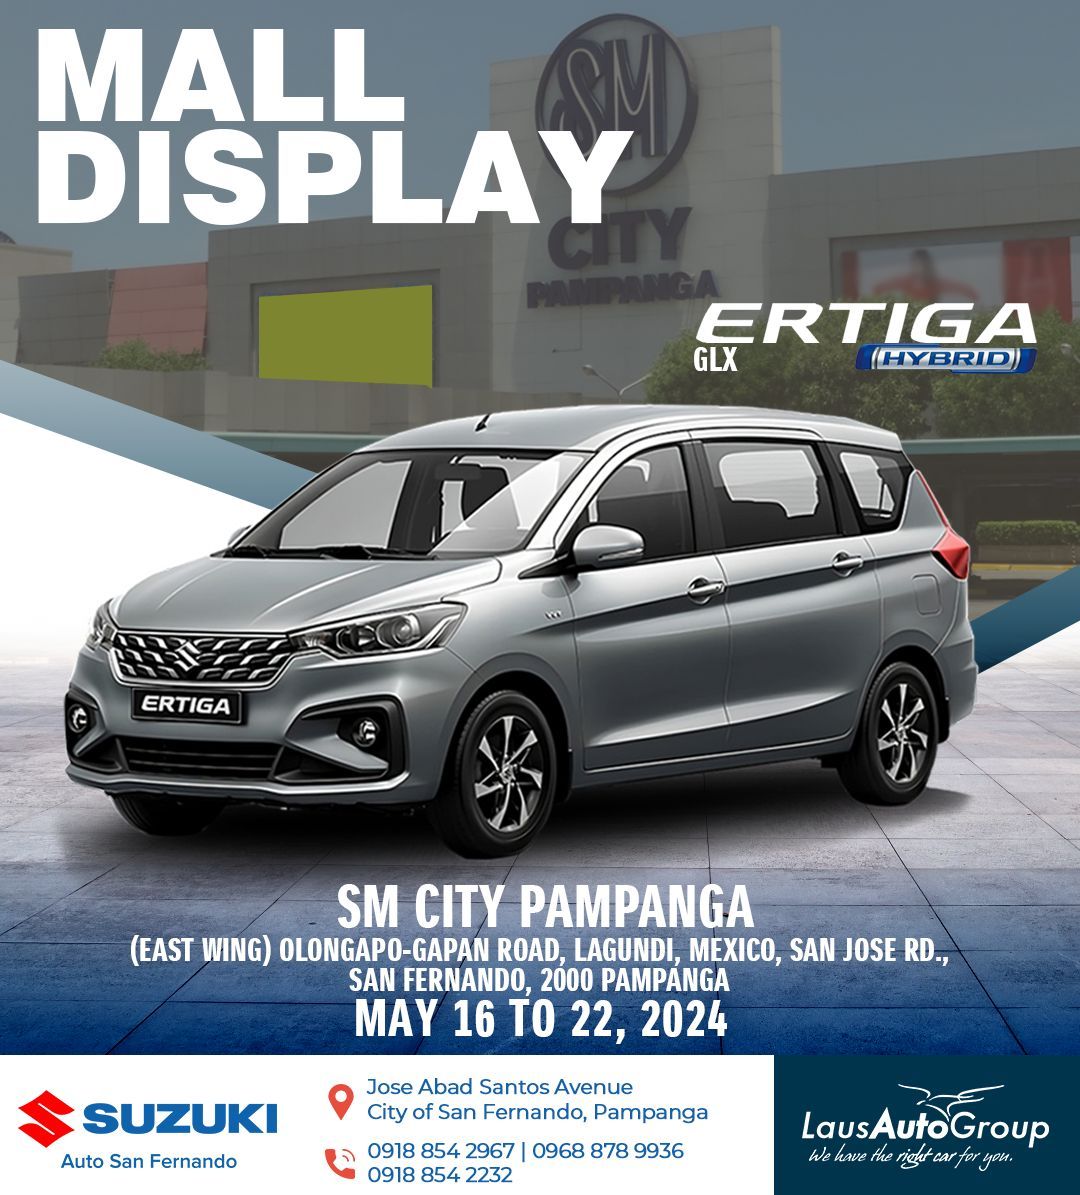  Suzuki Ertiga GLX Hybrid Display at SM Pampanga